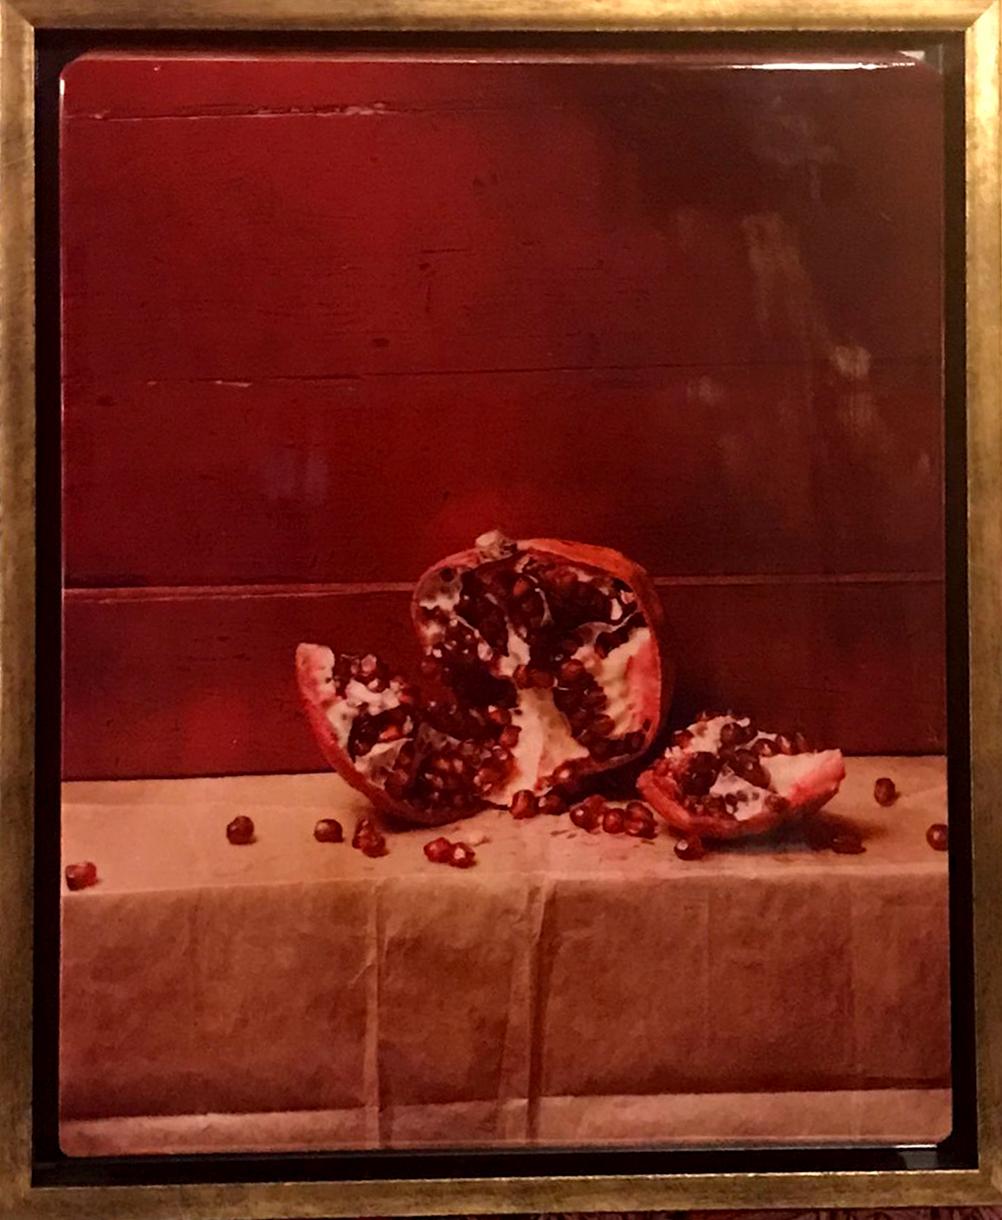 Vladimir Clavijo-Telepnev Color Photograph - "Pomegranate" Photography 19.5" x 13" inch Ed. 1/3 by VLADIMIR CLAVIJO-TELEPNEV